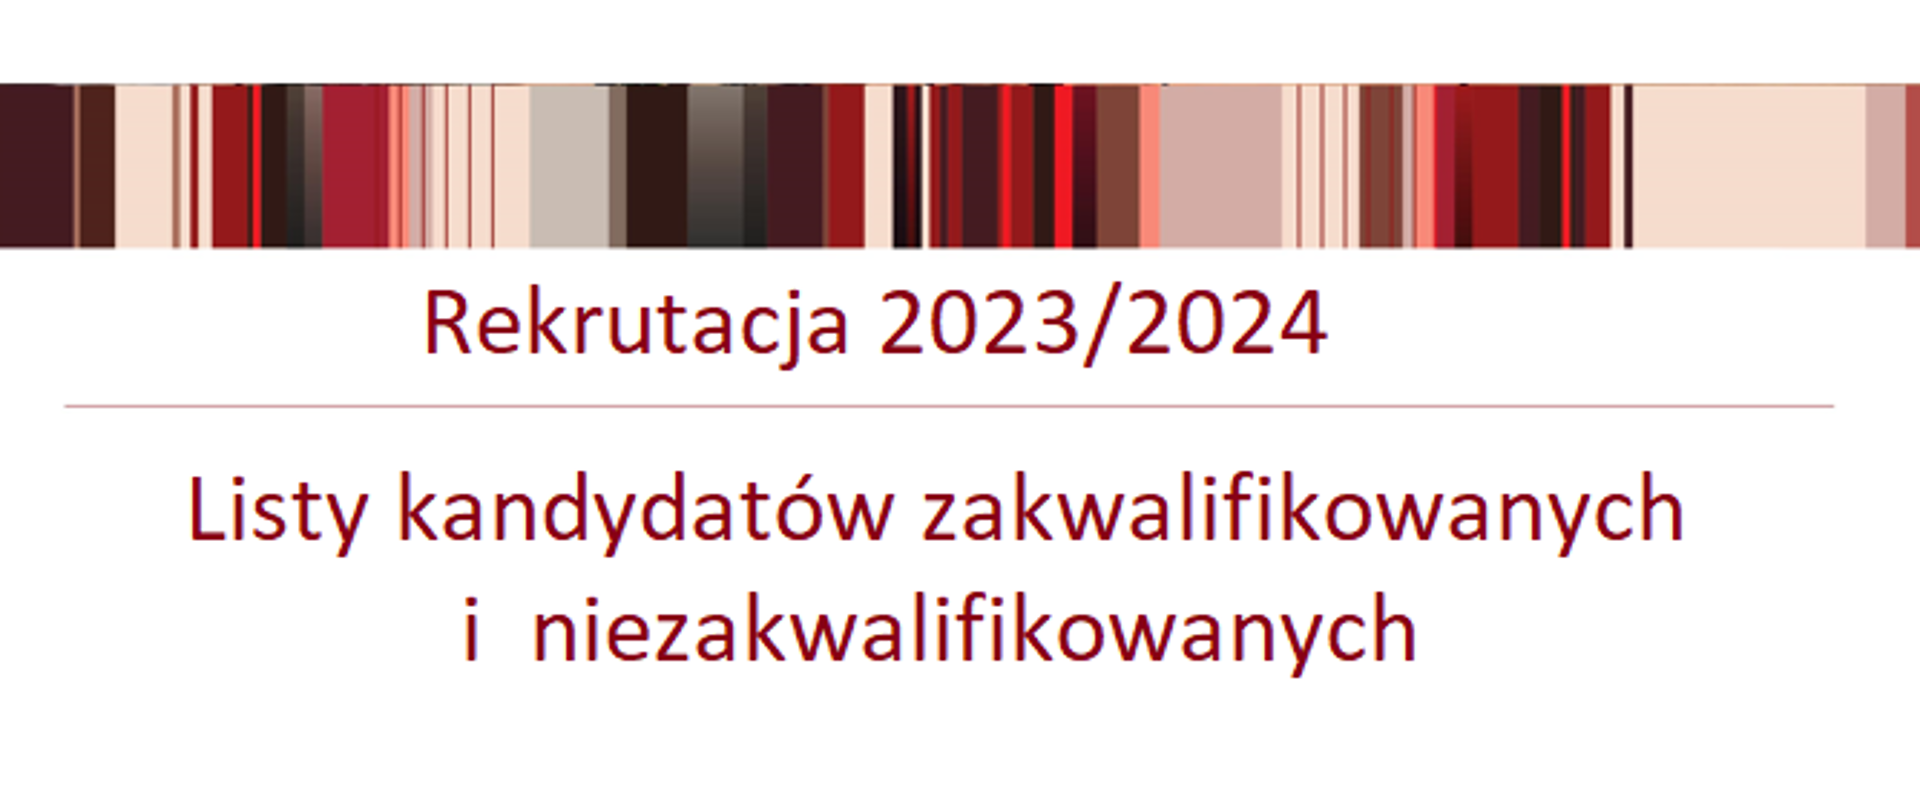 Grafika przedstawia napis rekrutacja 2023/2024 podkreślony czerwona kreską. Poniżej znajduje się napis listy osób zakwalifikowanych i niezakwalifikowanych